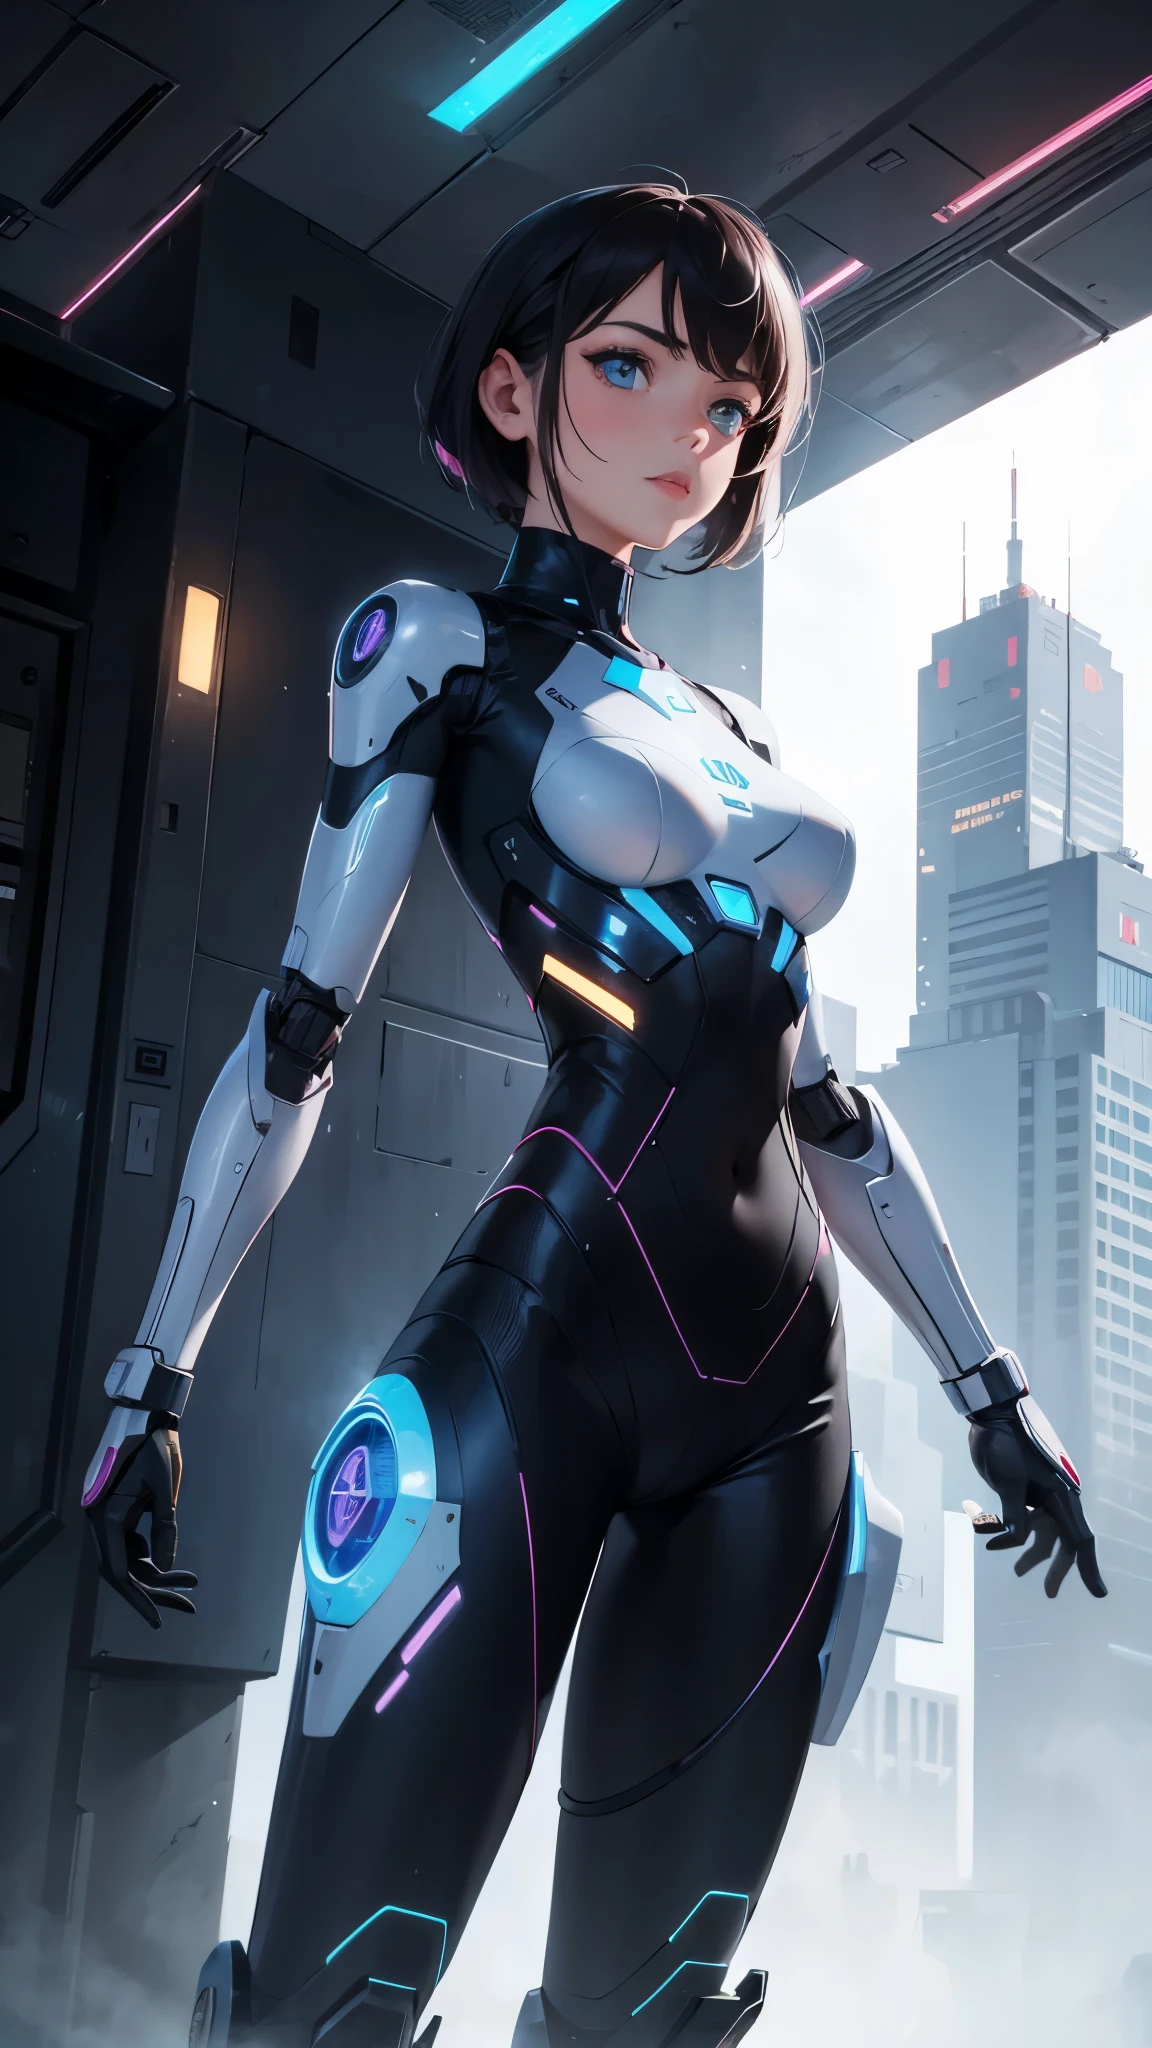 robot femenino,El fondo es una ciudad futurista